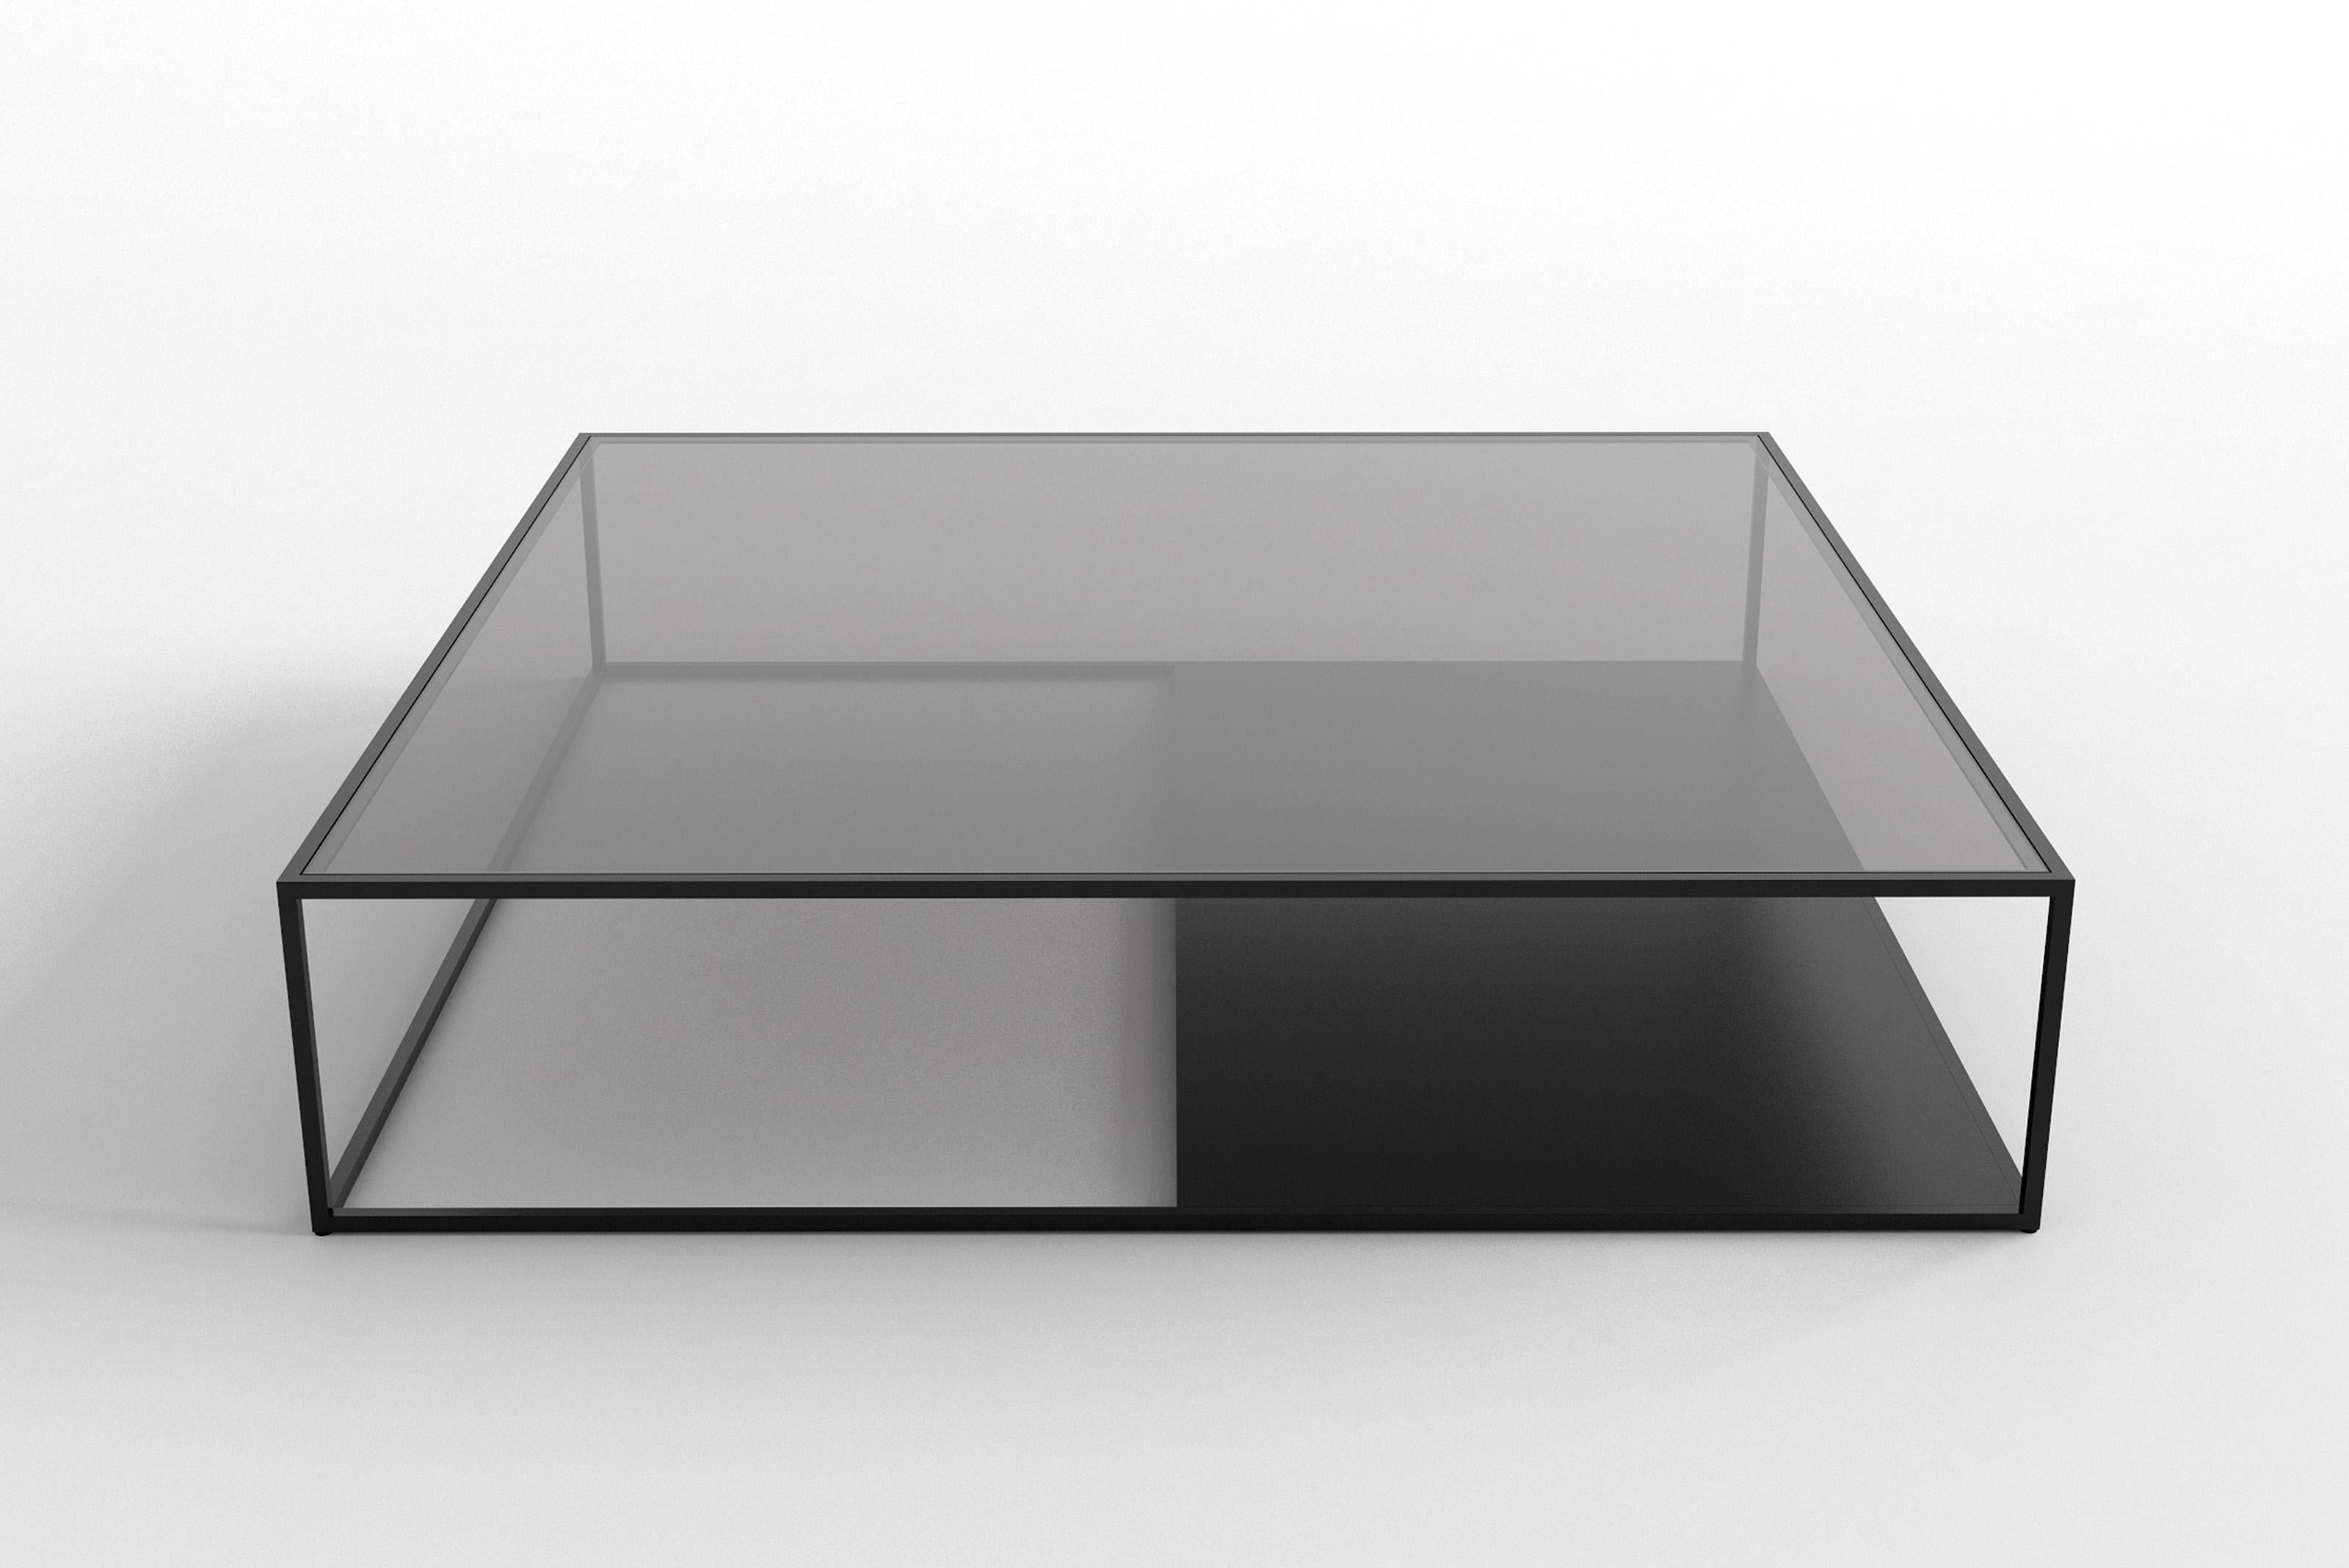 Table basse Half & Half Version B par Phase Design
Dimensions : D 121,9 x L 121,9 x H 26,7 cm. 
Matériaux : Métal revêtu de poudre et verre. 

Barre carrée en acier peint par poudrage, disponible avec un plateau en verre étoilé ou gris. Les